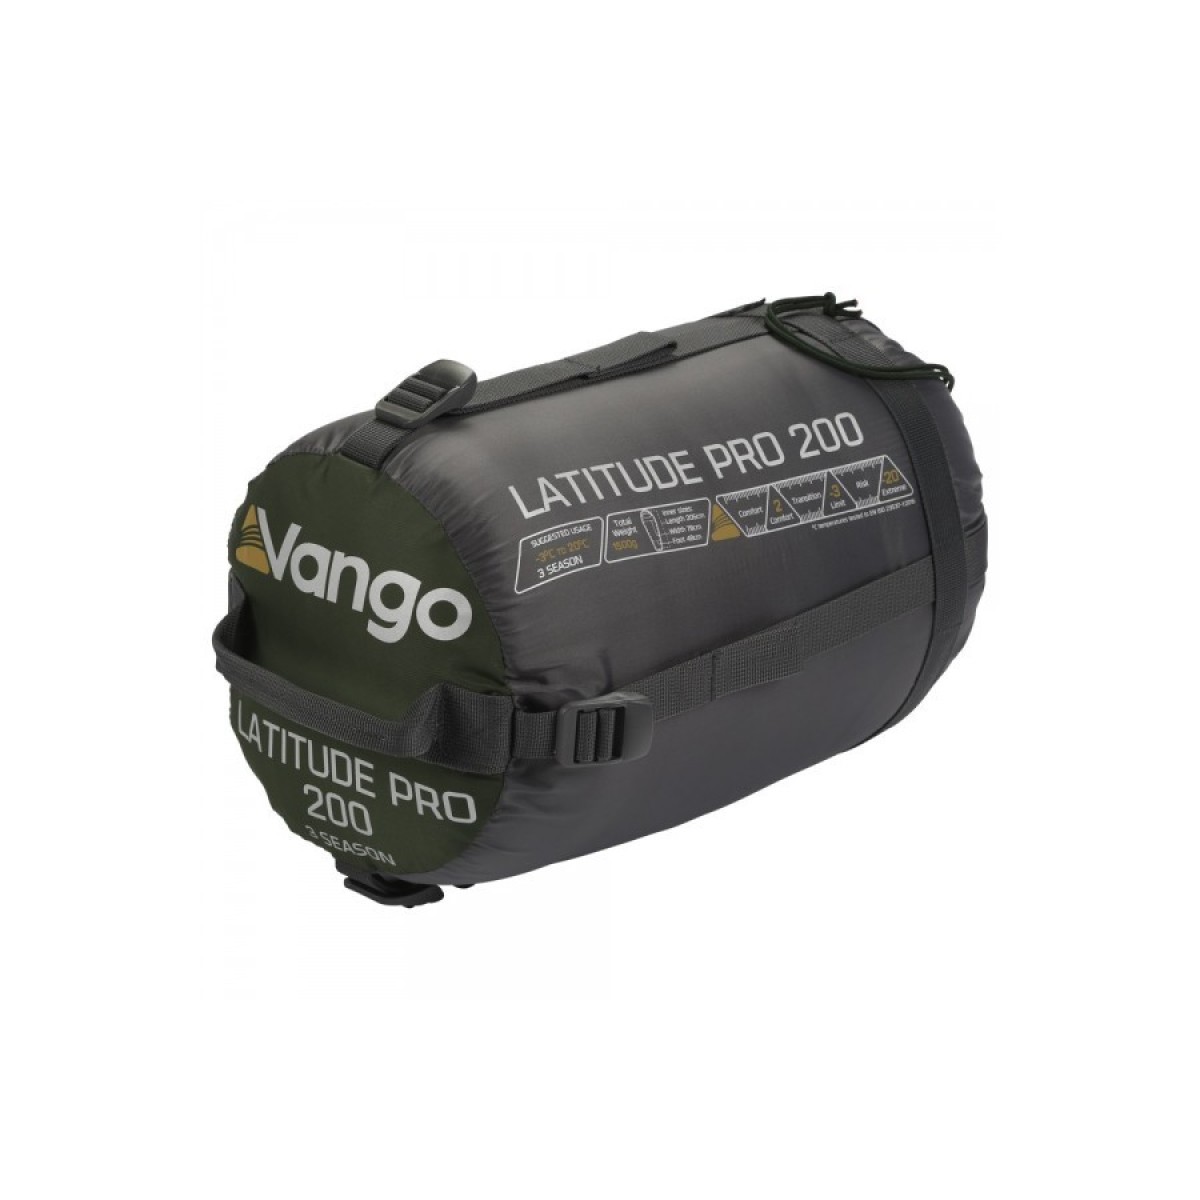 Спален чувал Vango Latitude Pro 200 VANGO - изглед 2